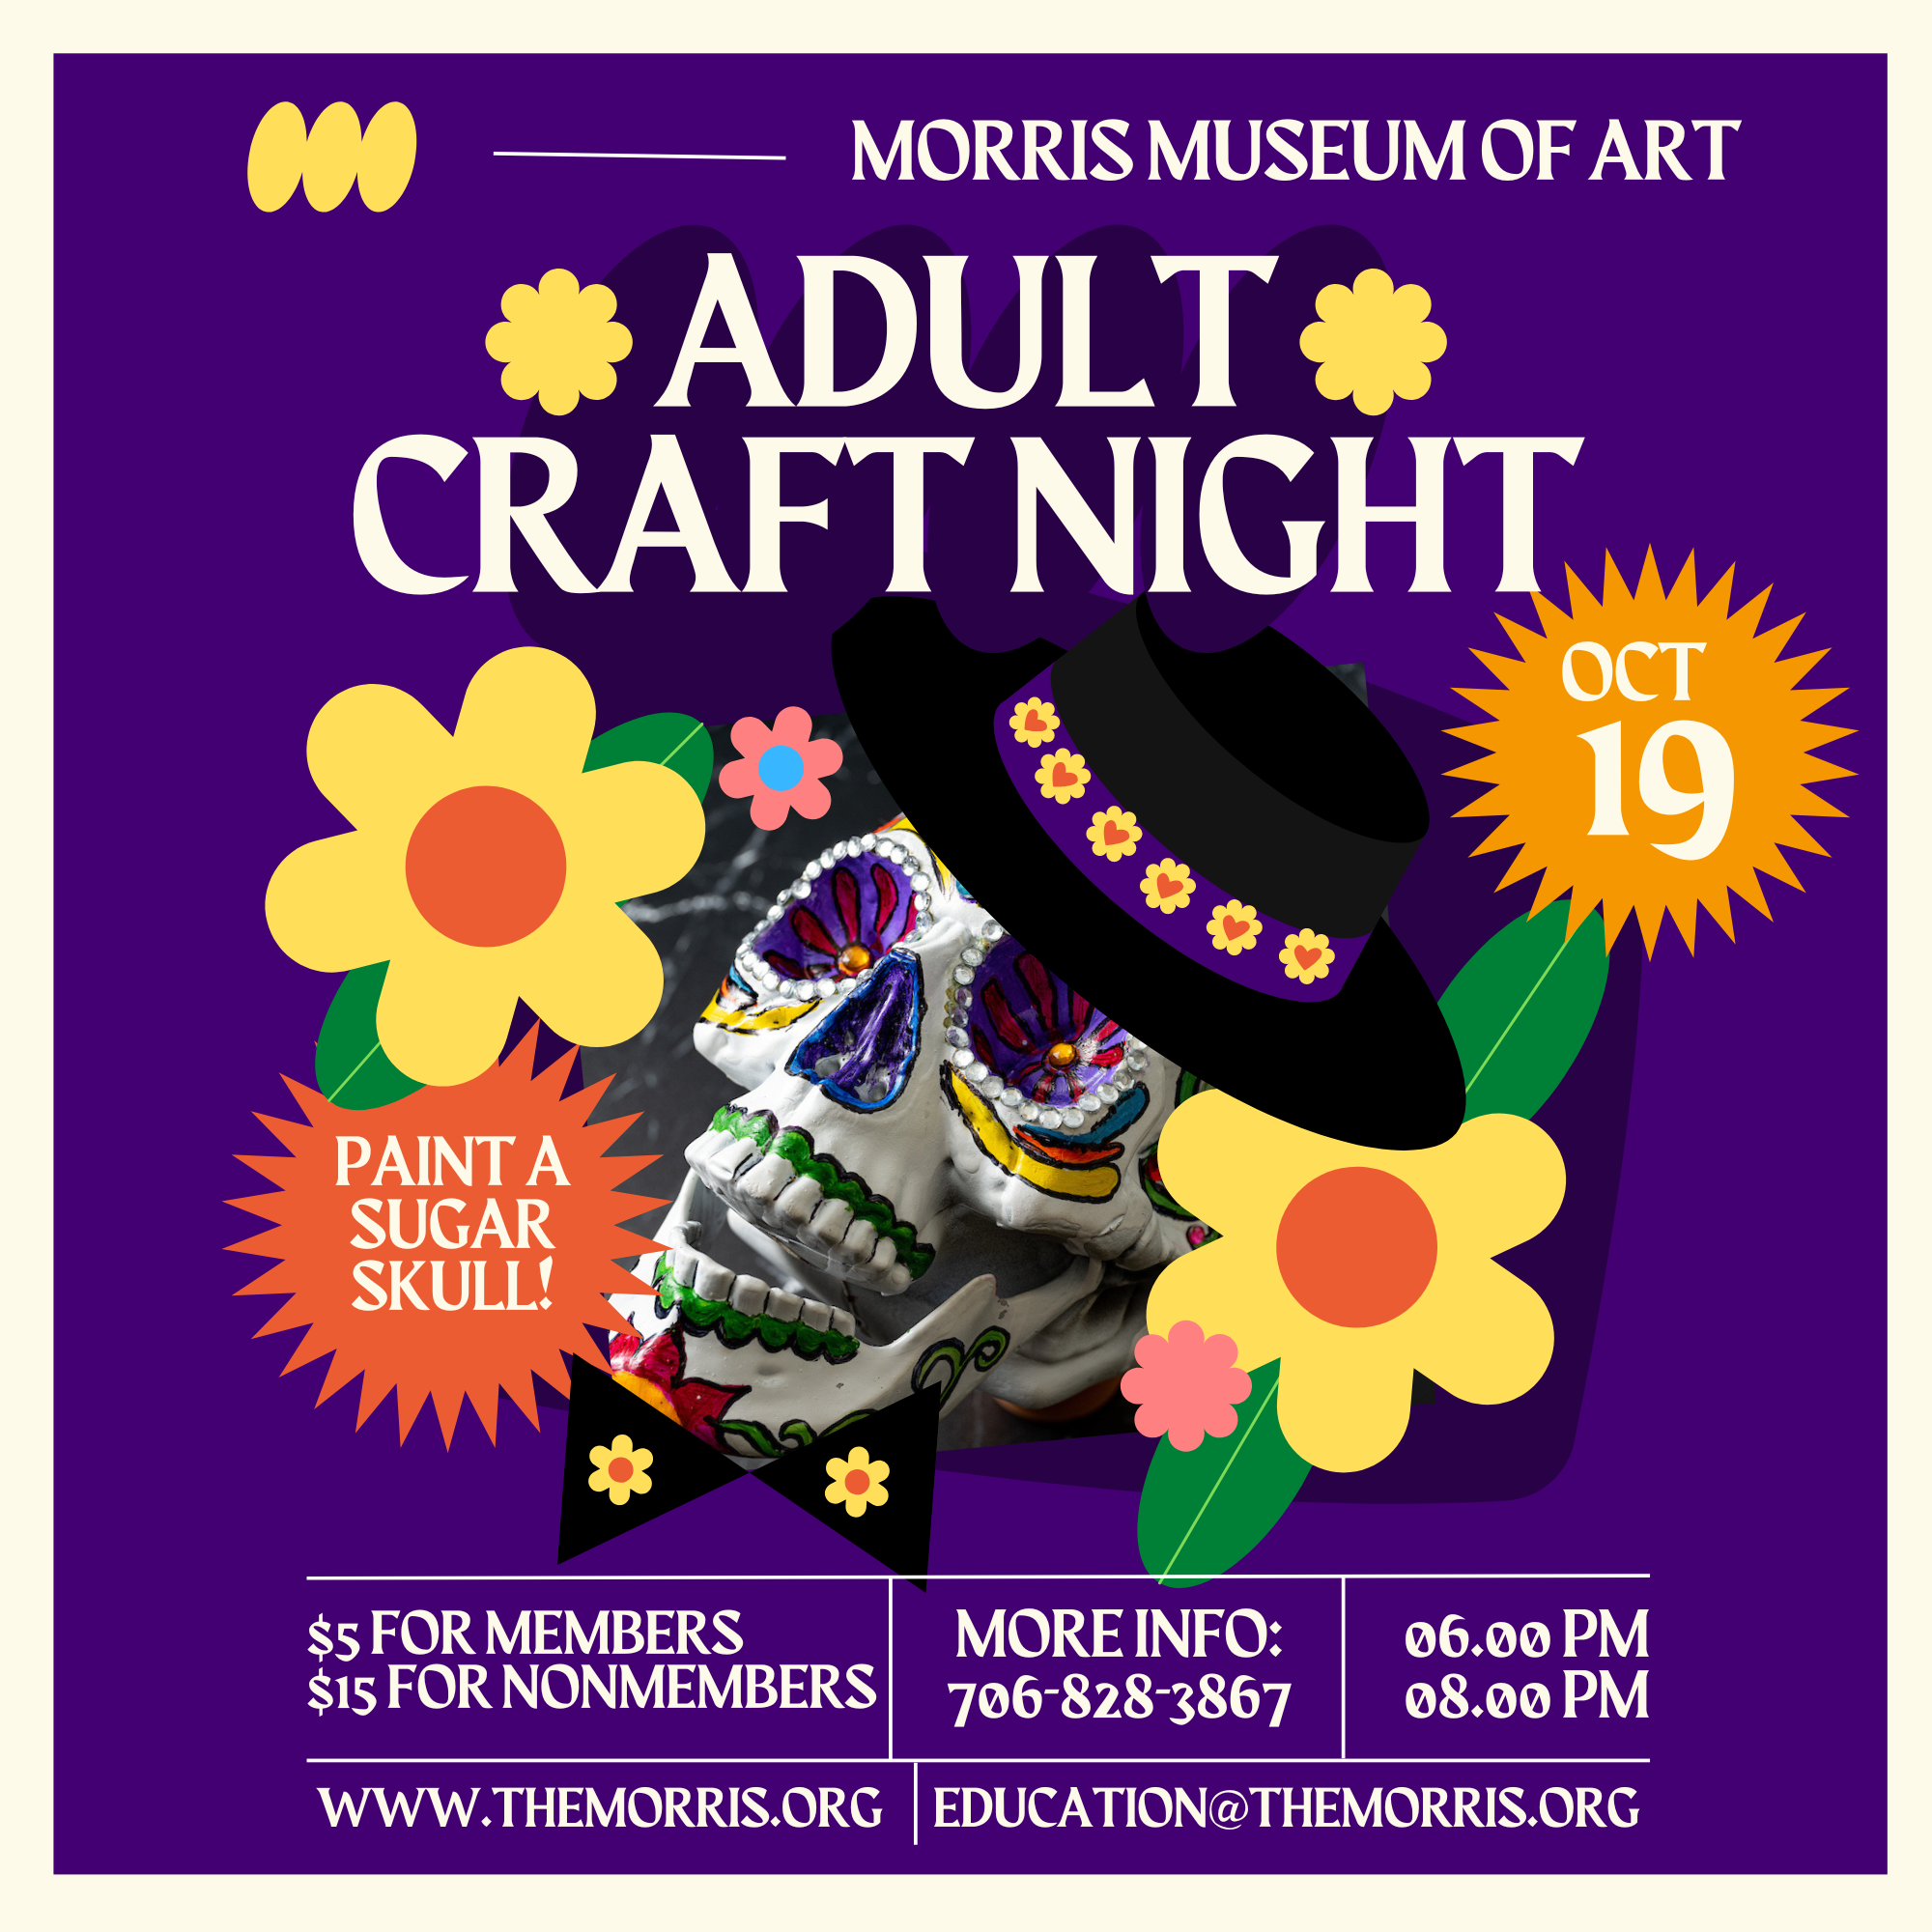 craft night flyer